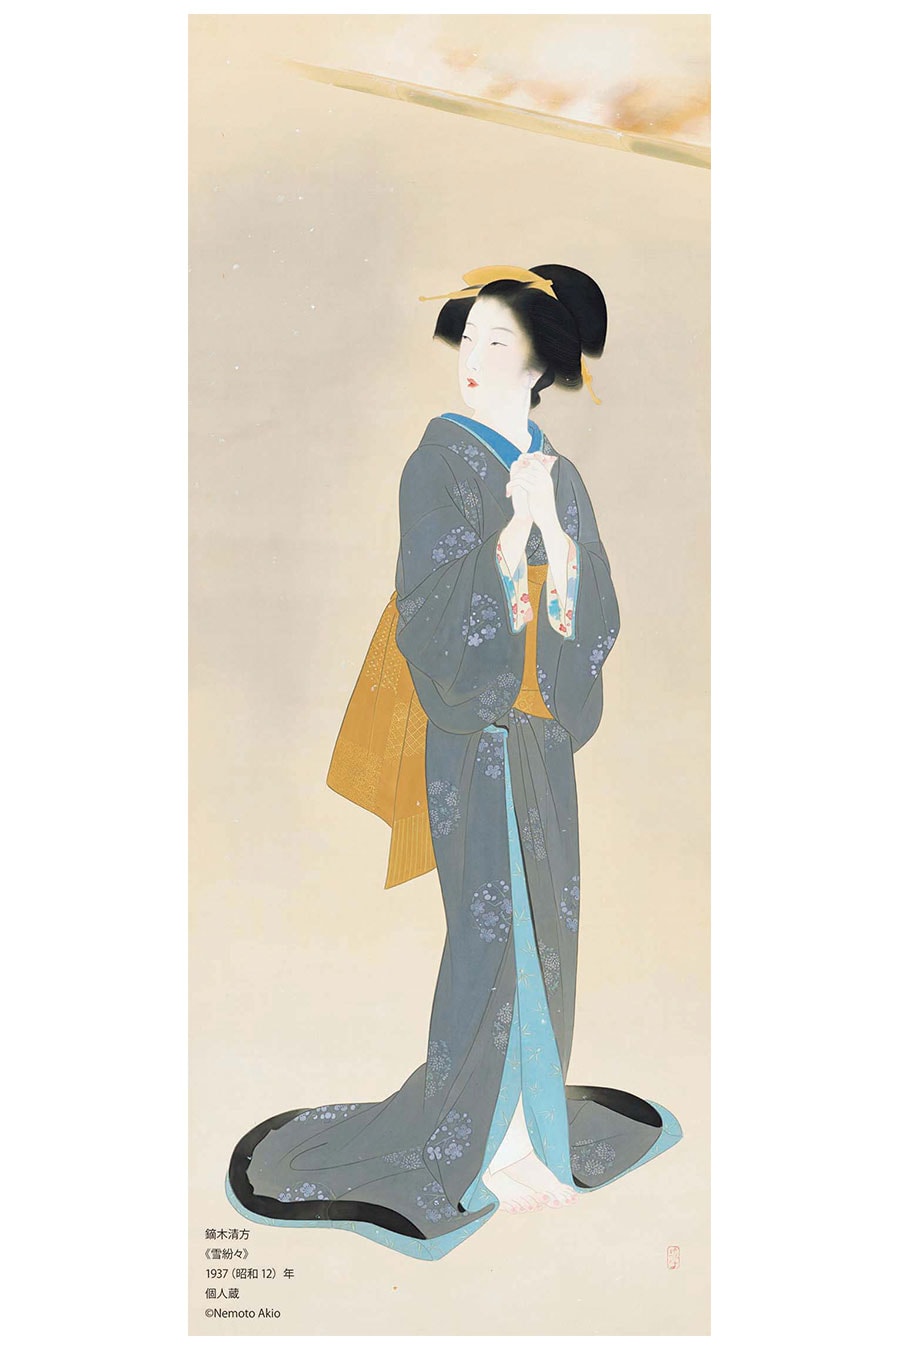 鏑木清方《雪紛々》1937(昭和12)年、個人蔵、通期展示、絹本彩色・軸、143.7×56.2cm ©Nemoto Akio